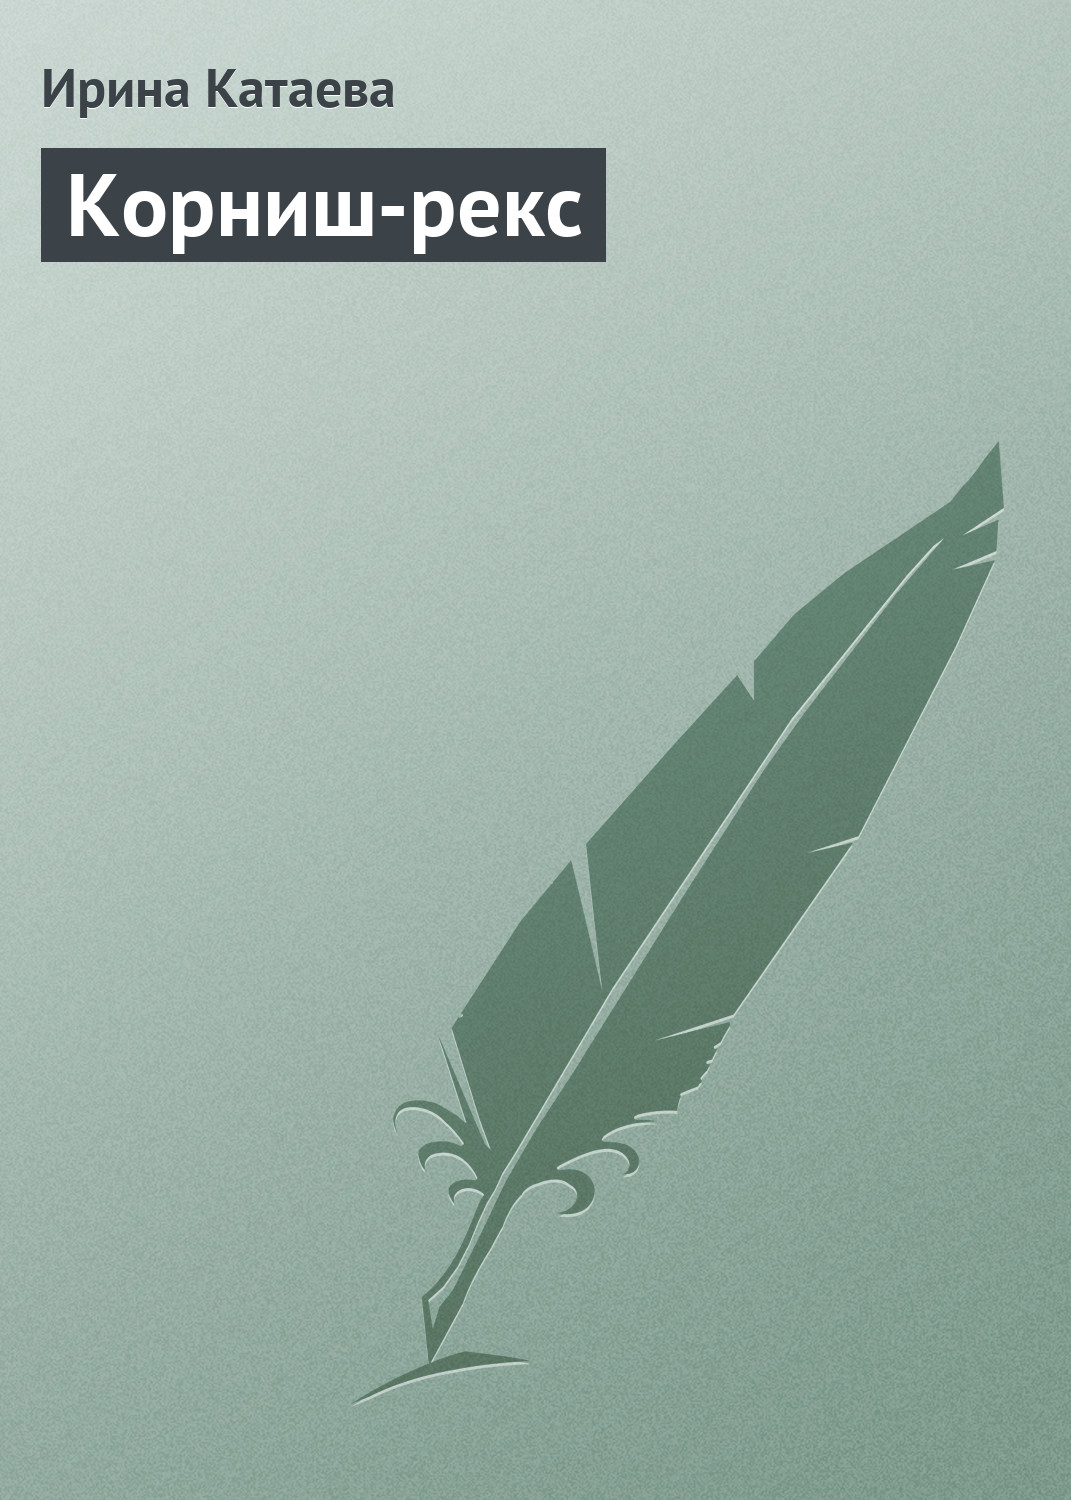 Книга Корниш-рекс из серии , созданная Ирина Катаева, может относится к жанру Домашние Животные. Стоимость книги Корниш-рекс  с идентификатором 6191220 составляет 89.90 руб.